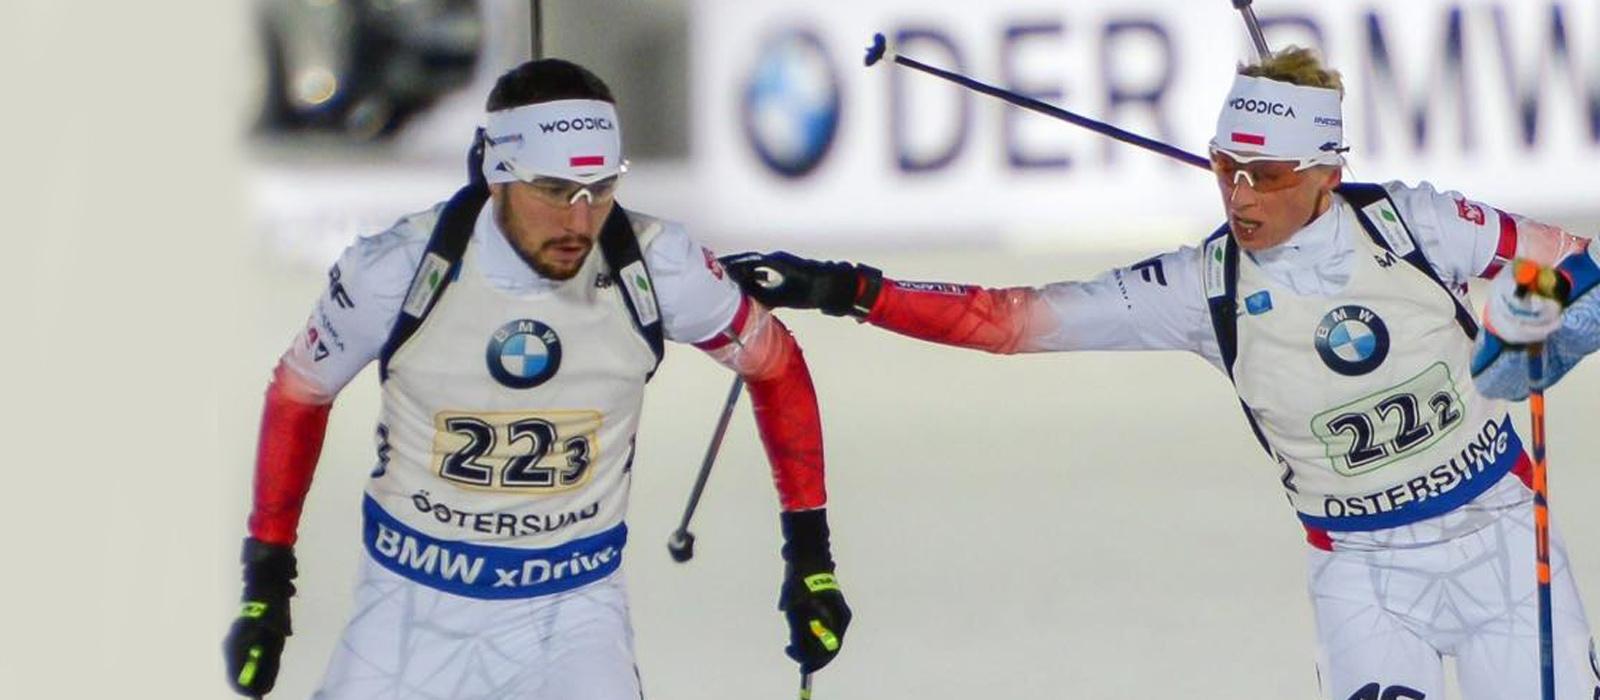 WOODICA wspiera czołową polską biathlonistkę – Krystynę Guzik